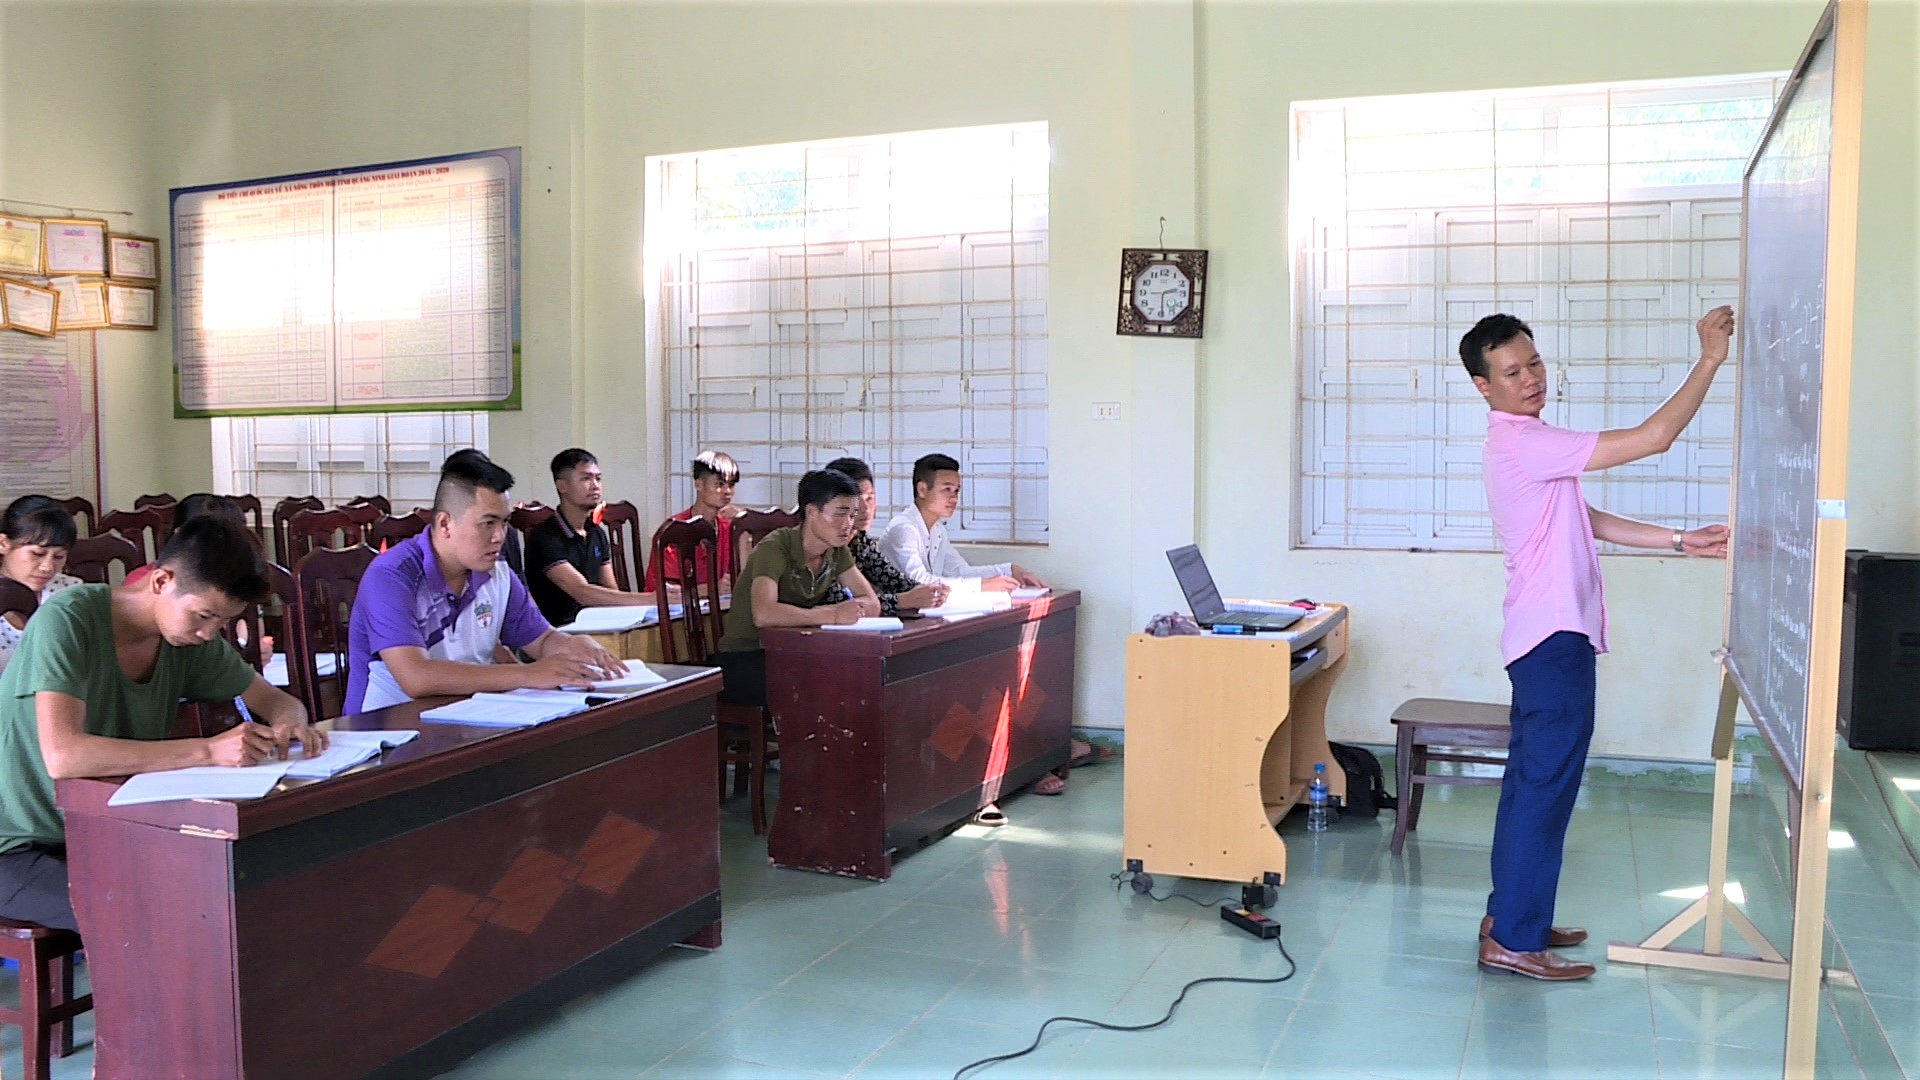 Lớp đào tạo nghề điện dân dụng năm 2020 tại thôn Khe Lọng Ngoài, xã Thanh Sơn, huyện Ba Chẽ. Ảnh: Hằng Ngần